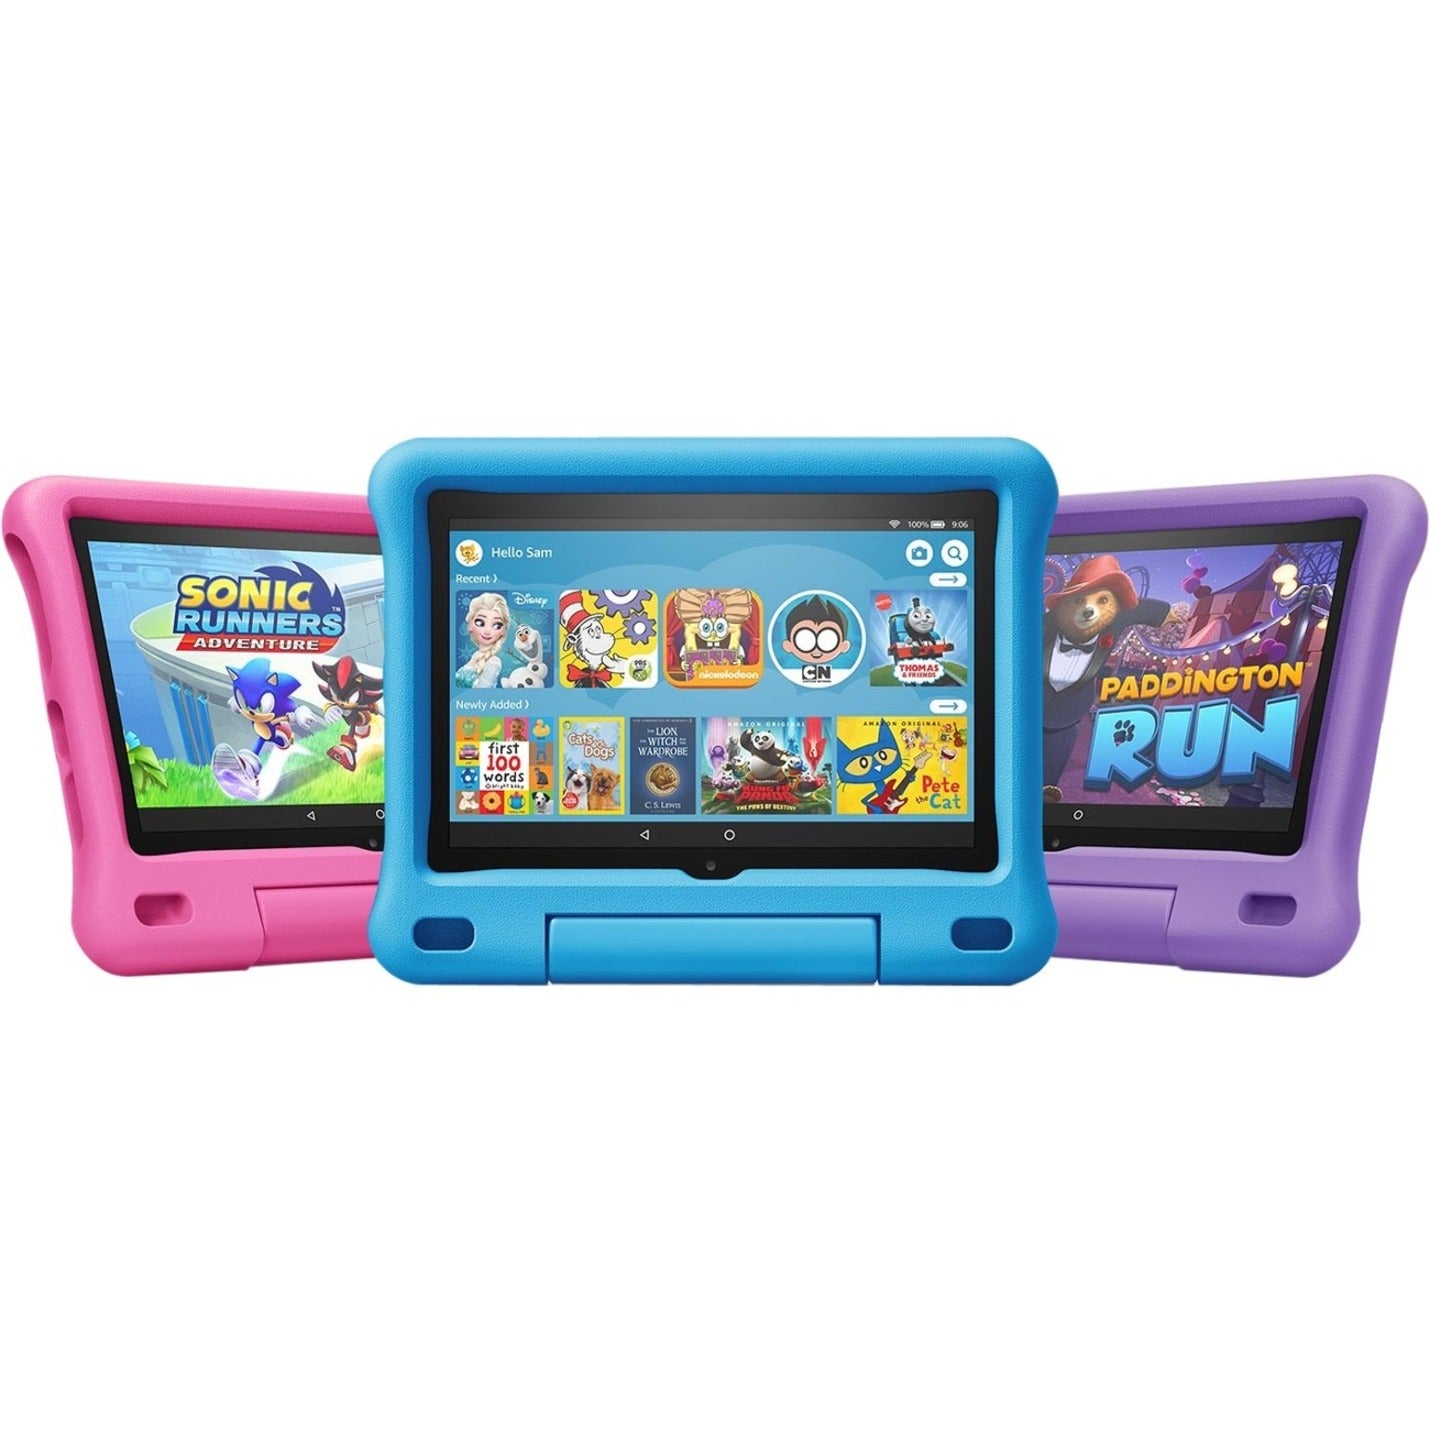 Amazon B07WDDT3G5 Fire HD 8 Kids Tablet, 8" Display, 32GB, Blue, Parental Control